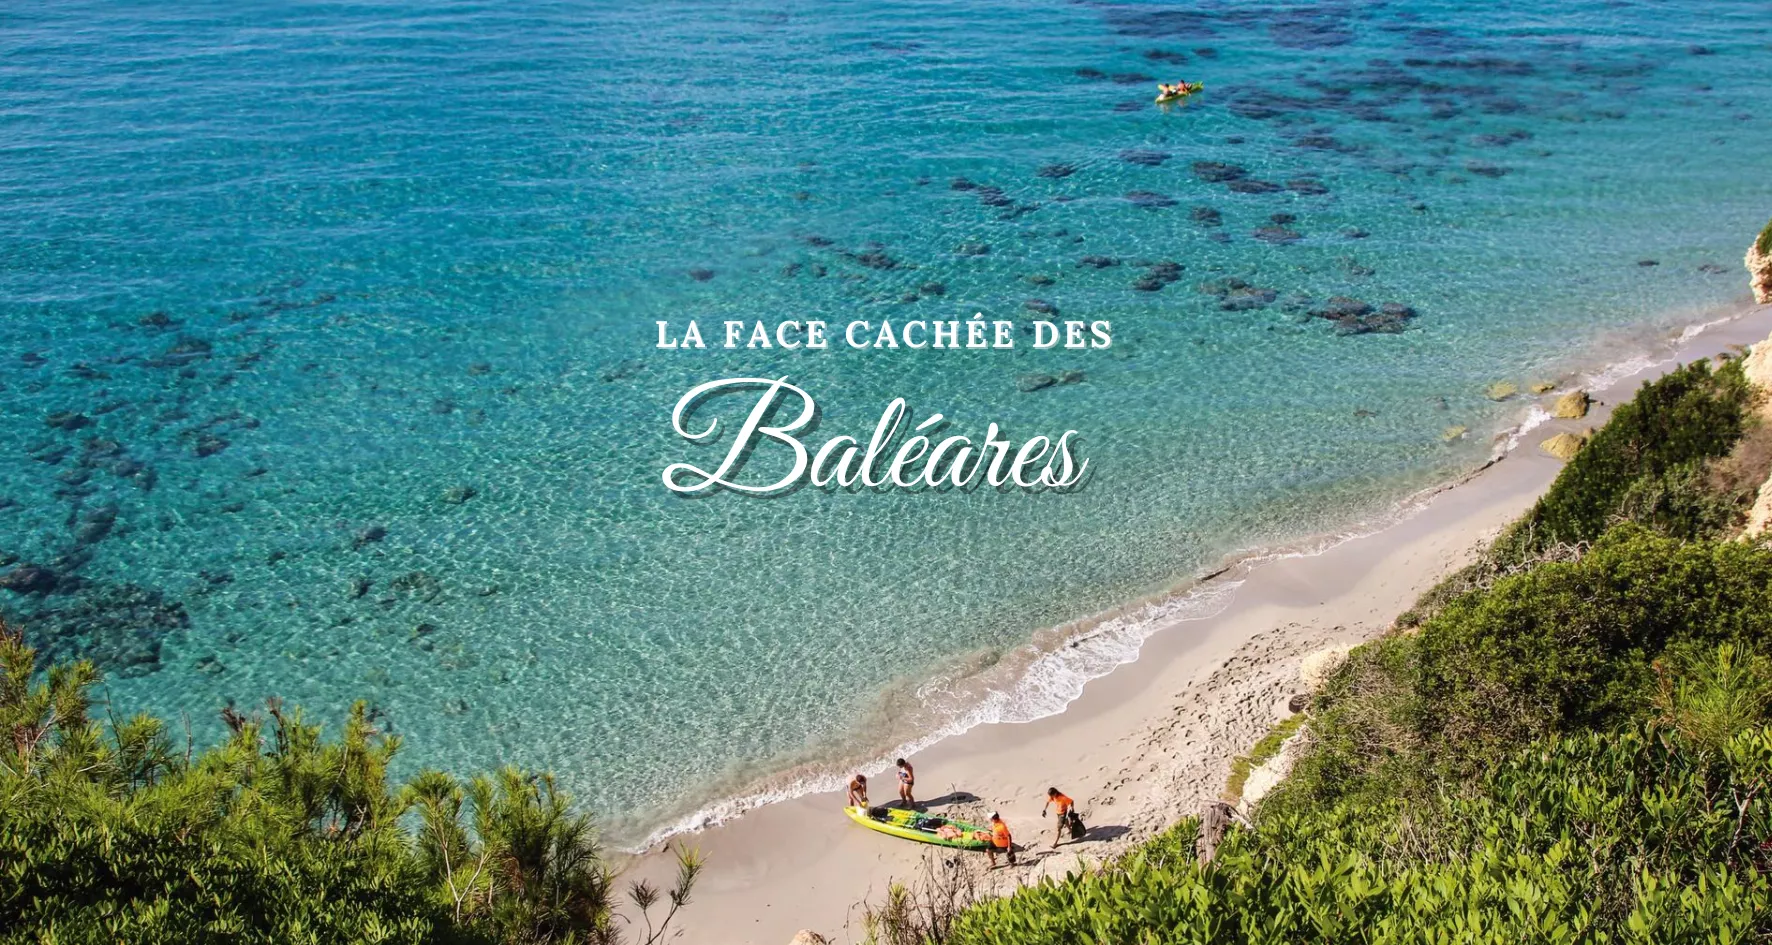 Main image of article: Le patrimoine des Baléares : à chaque île son artisanat